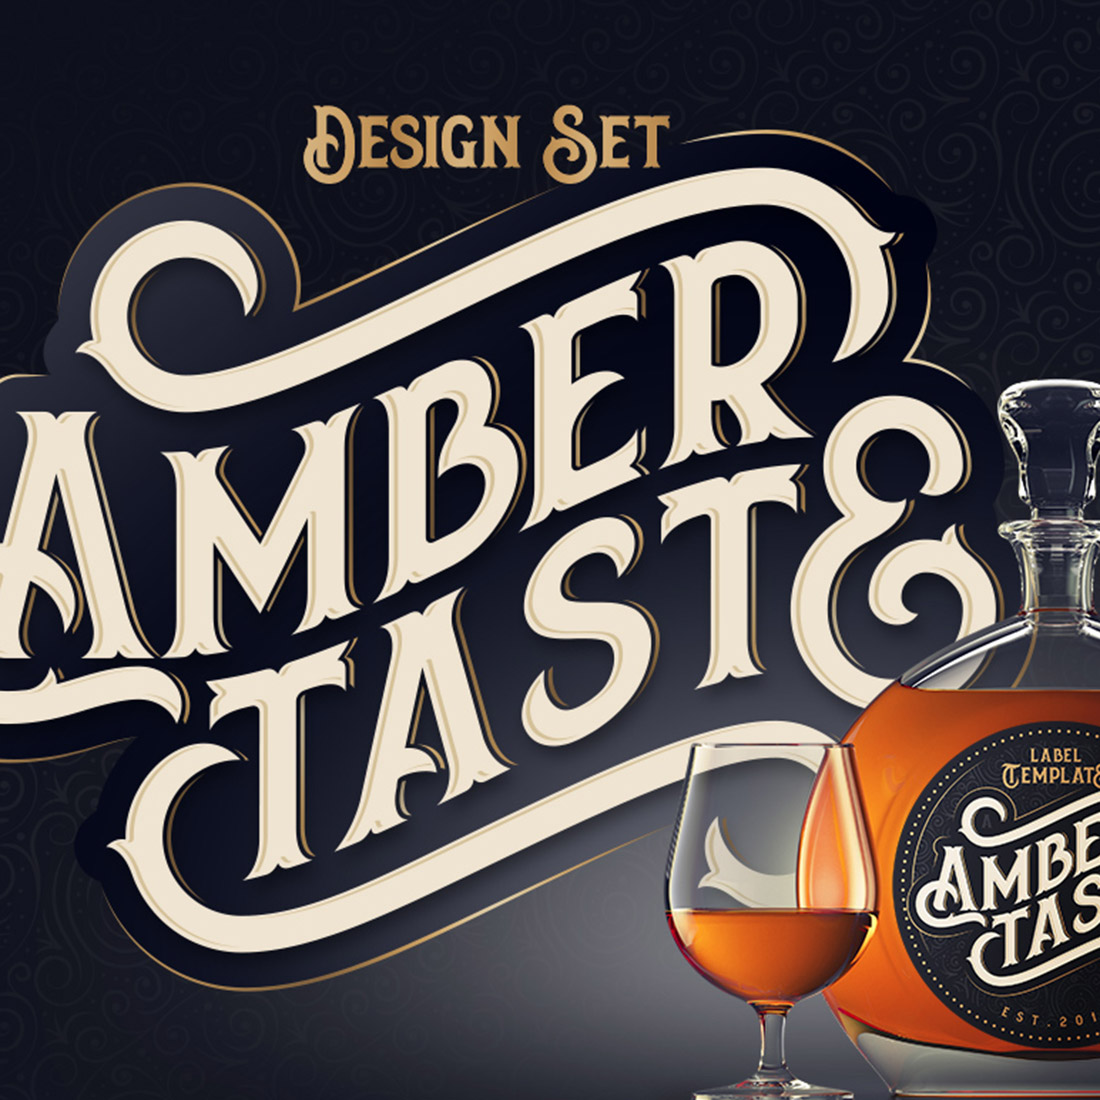 Amber Taste Font, Label, Mockup - main image preview.